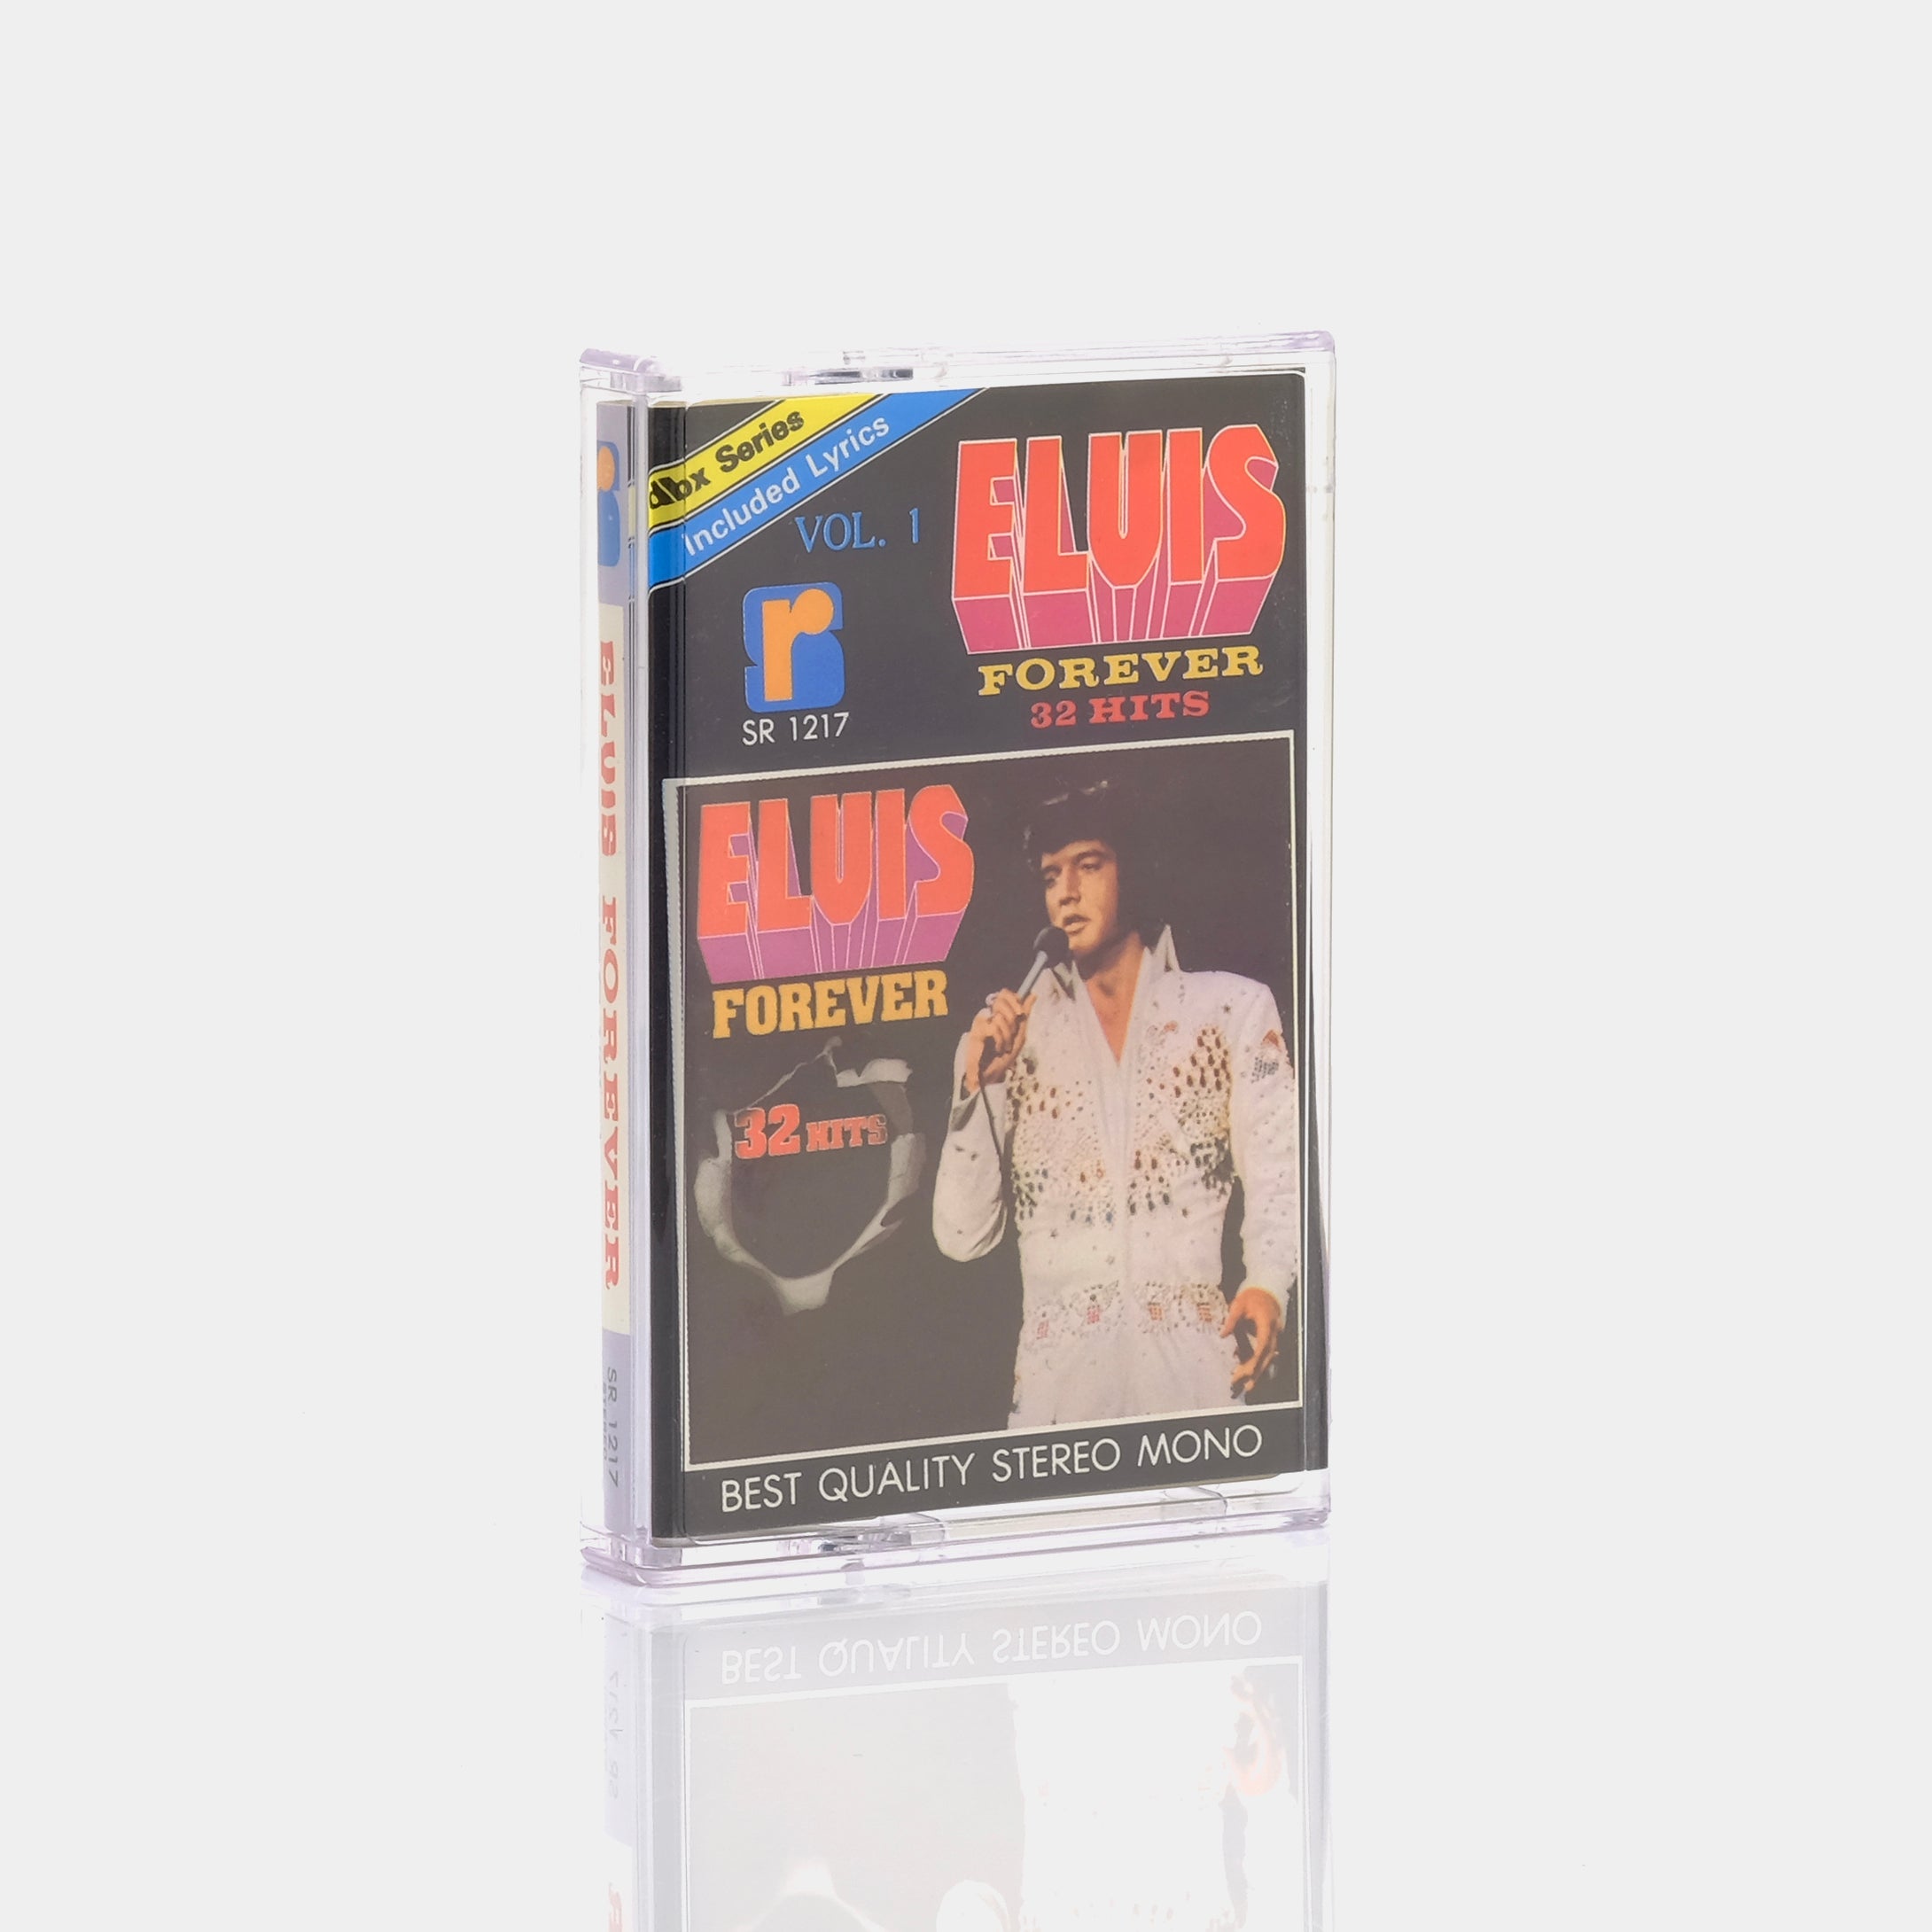 Elvis Presley - Elvis Forever 32 Hits Vol. 1 Cassette Tape